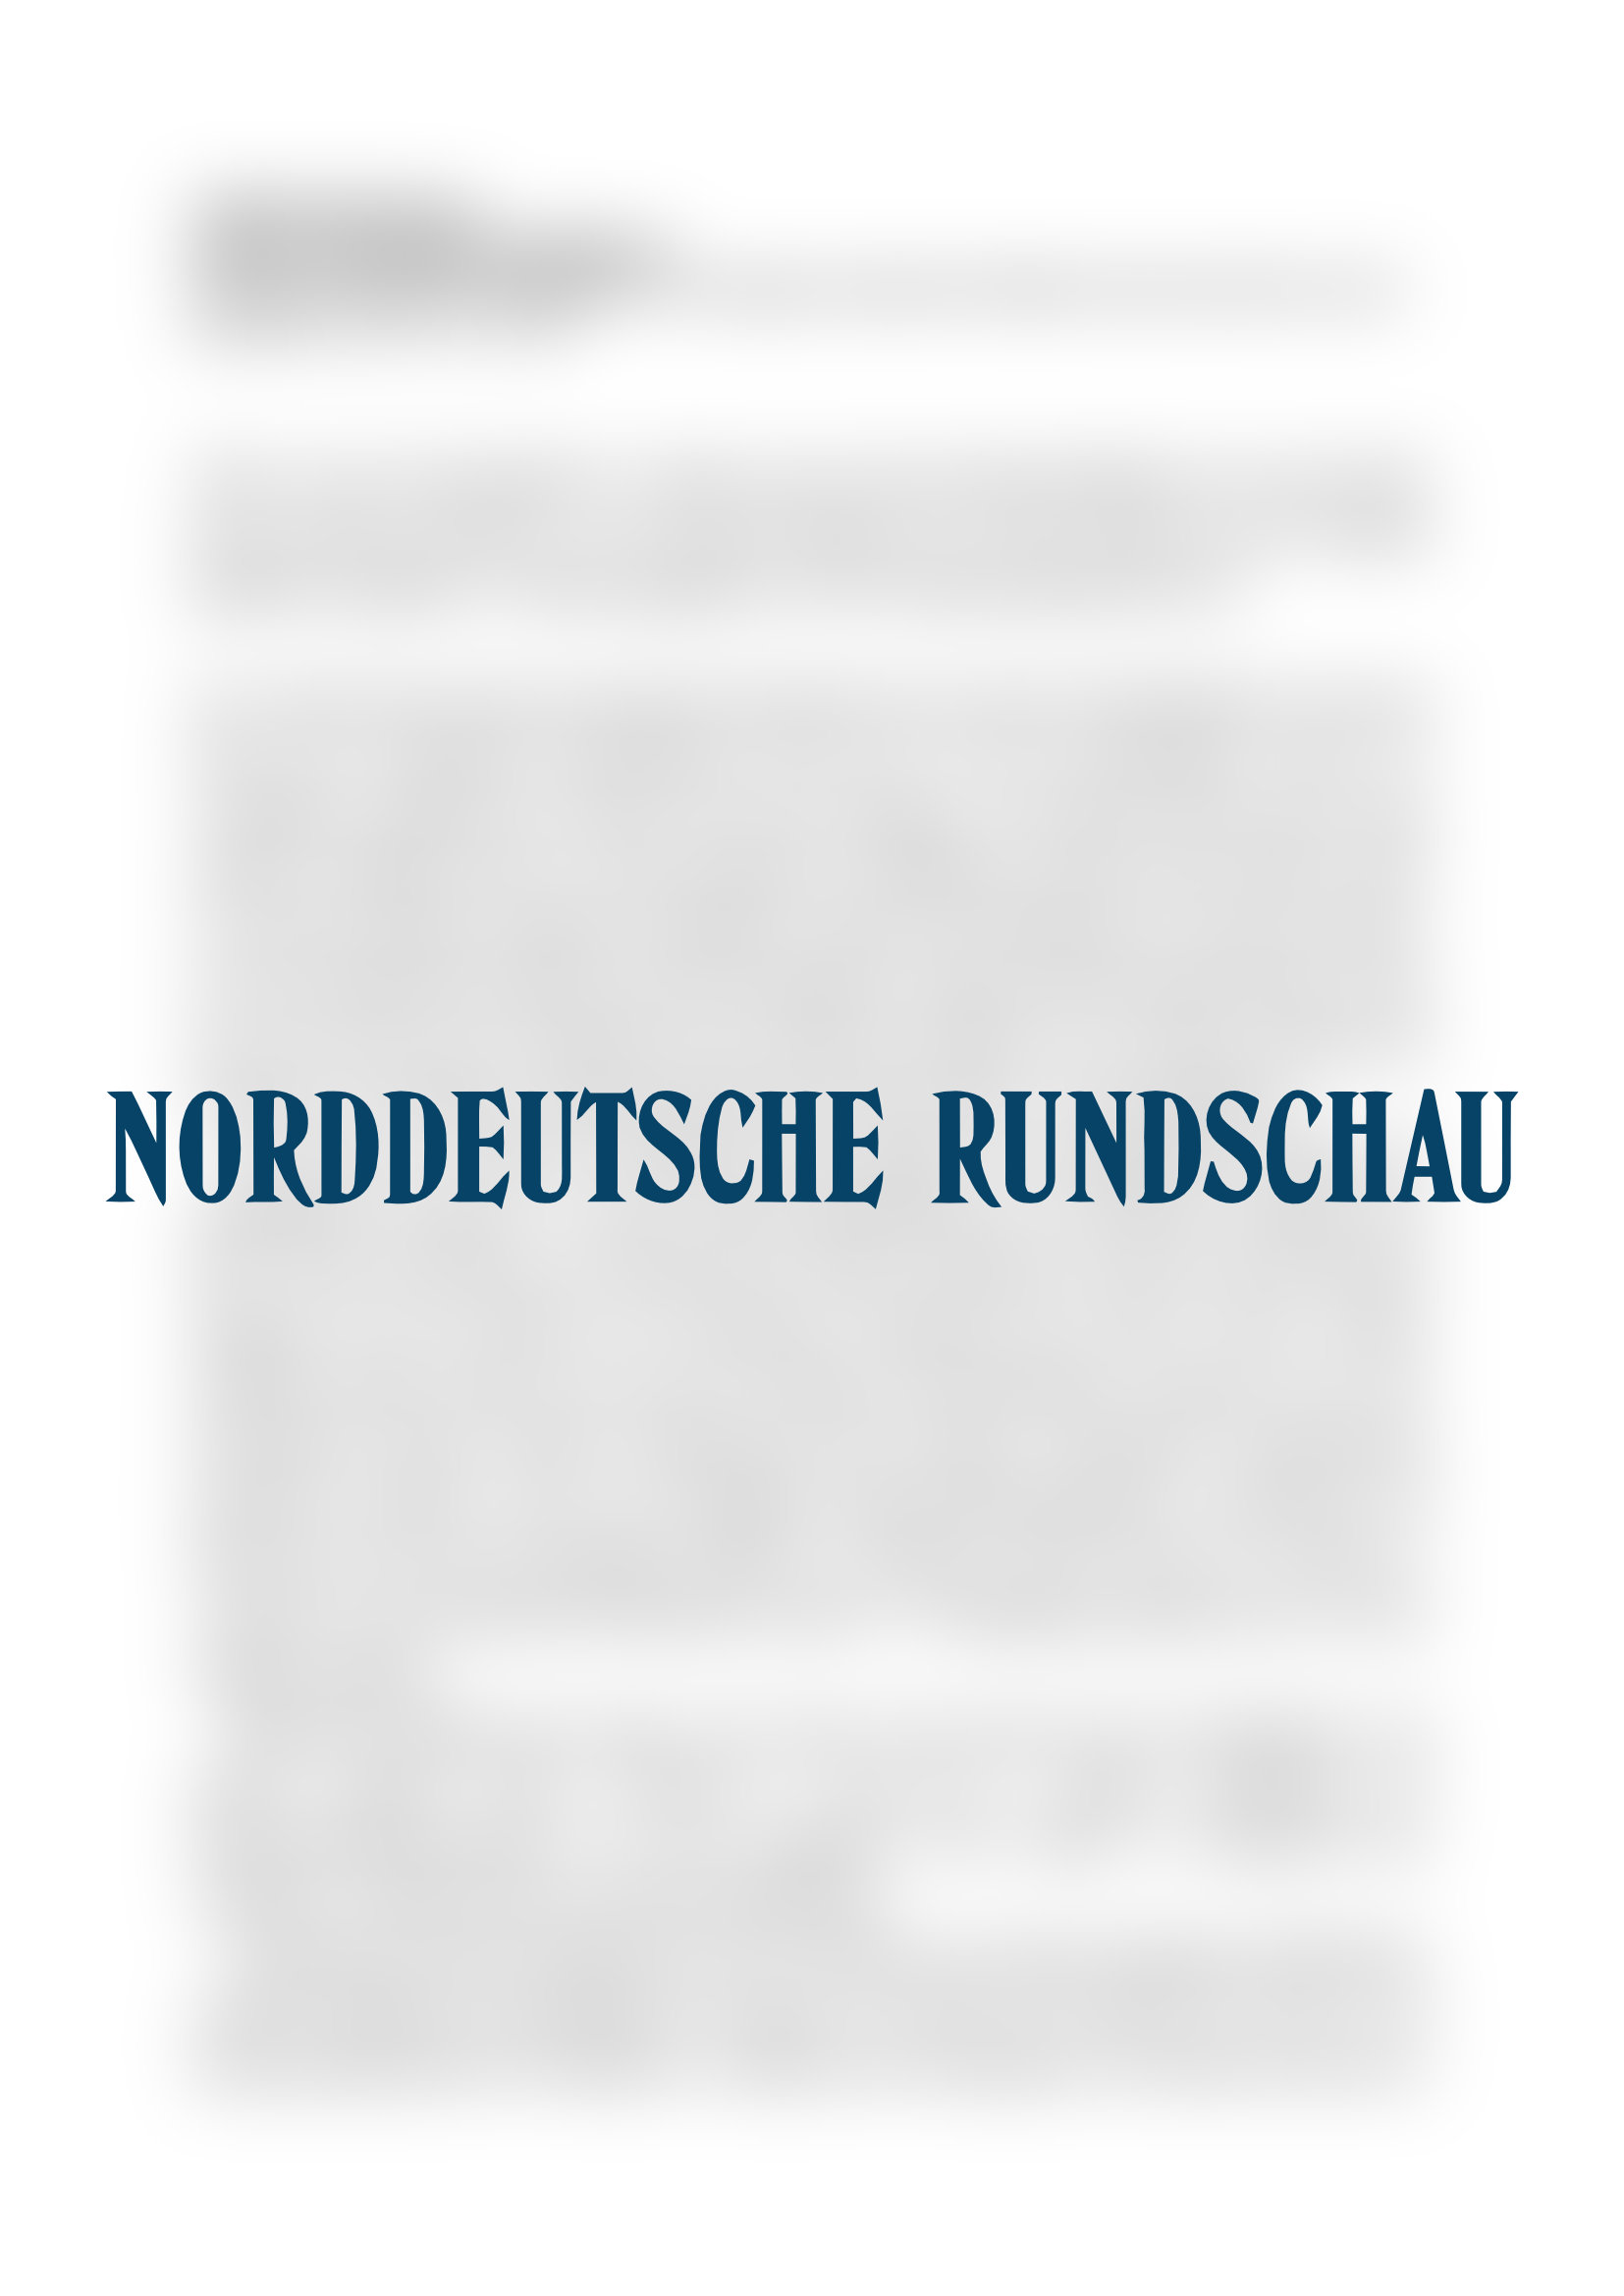 Vorschau - Norddeutsche Rundschau